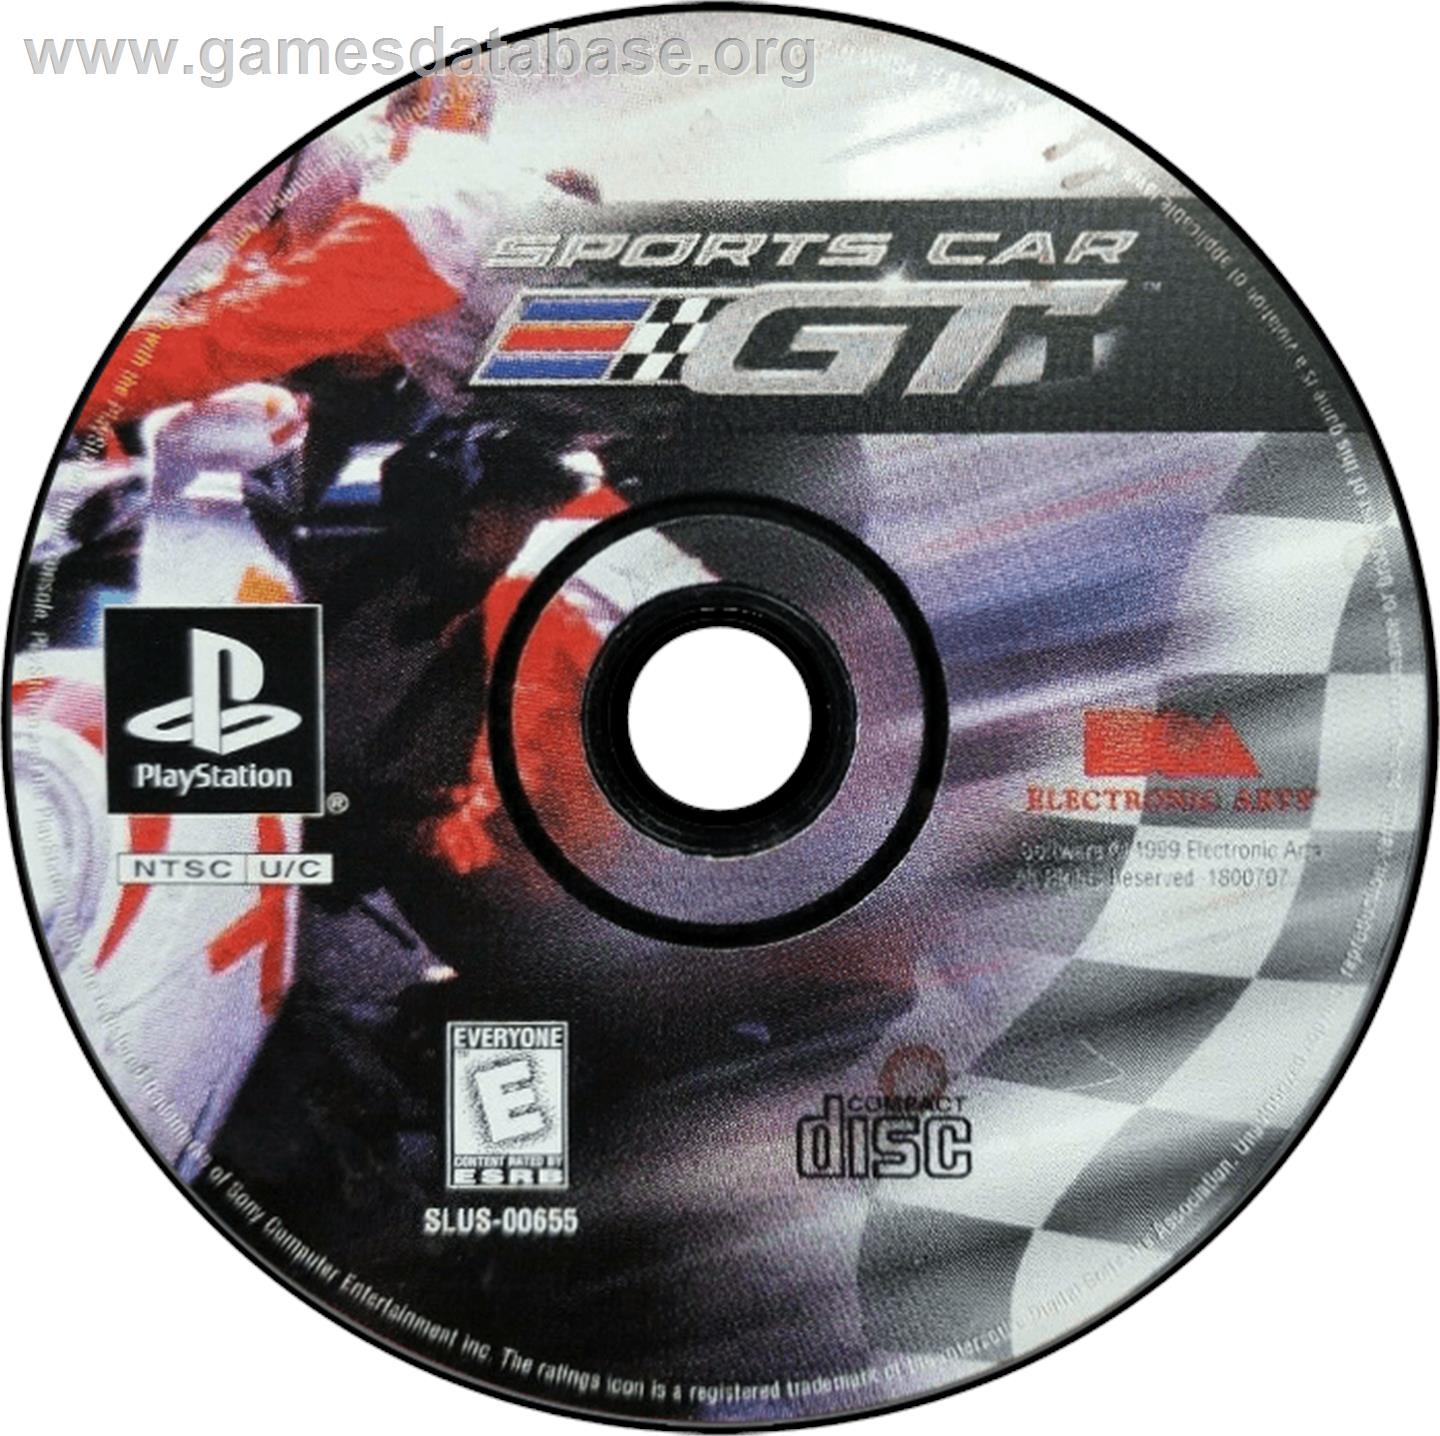 Sports Car GT - Sony Playstation - Artwork - Disc